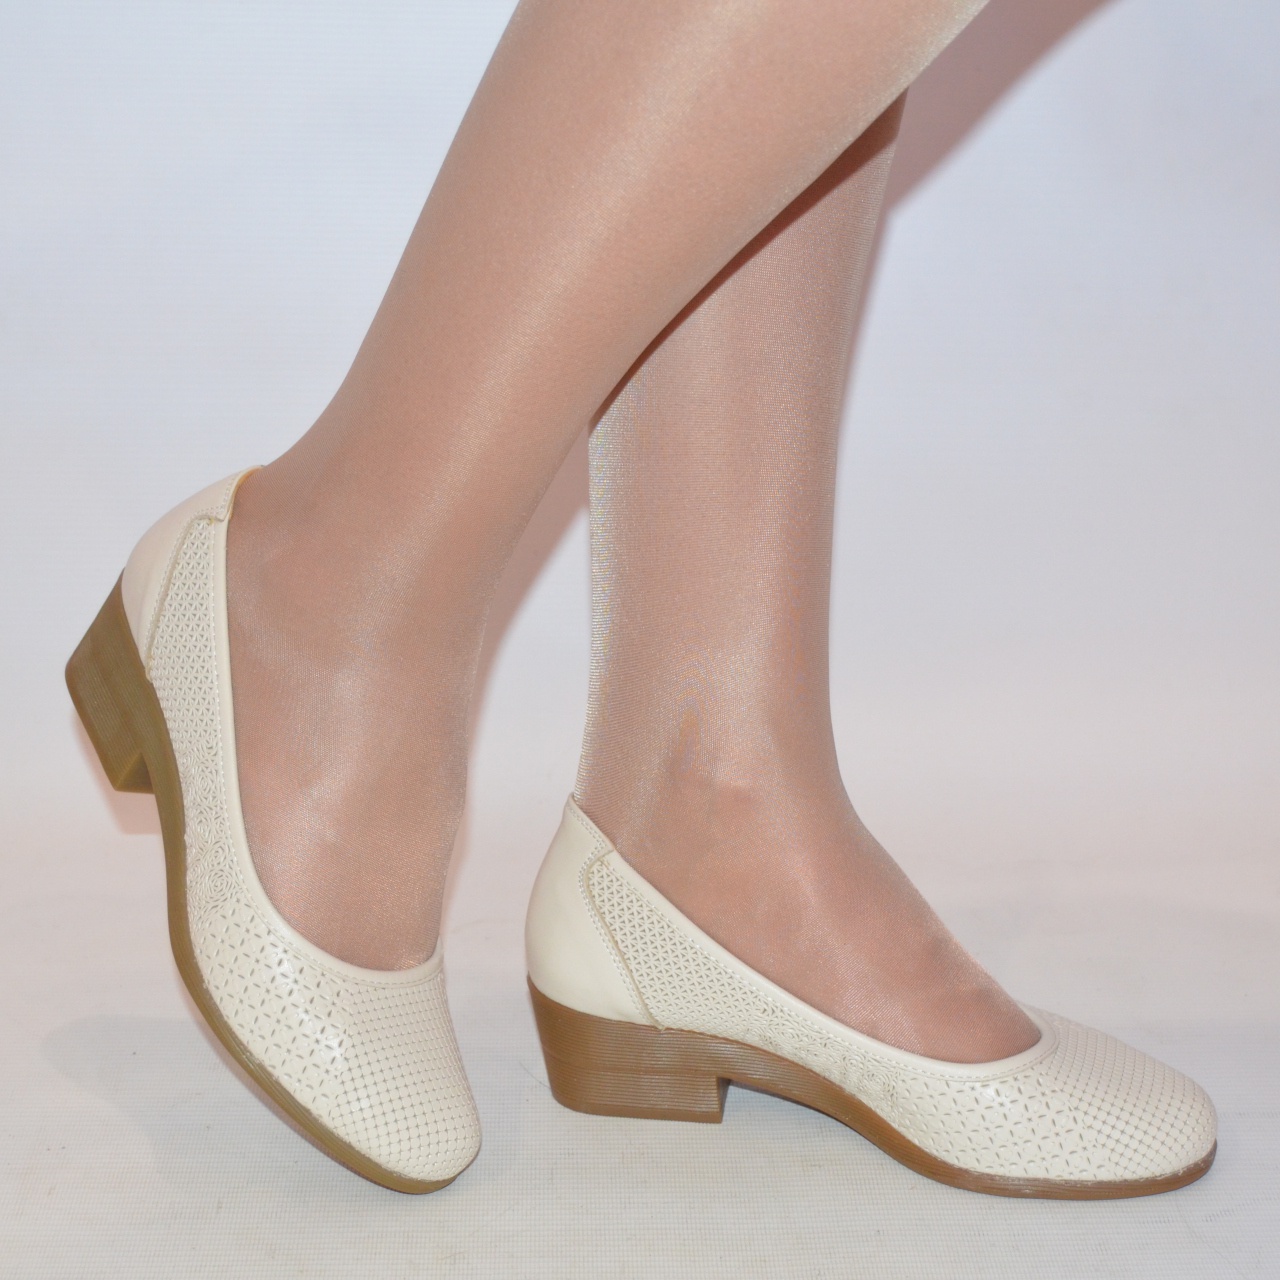 Туфлі жіночі La Pinta 0137-218-71 бежеві шкіра каблук розміри 36,37